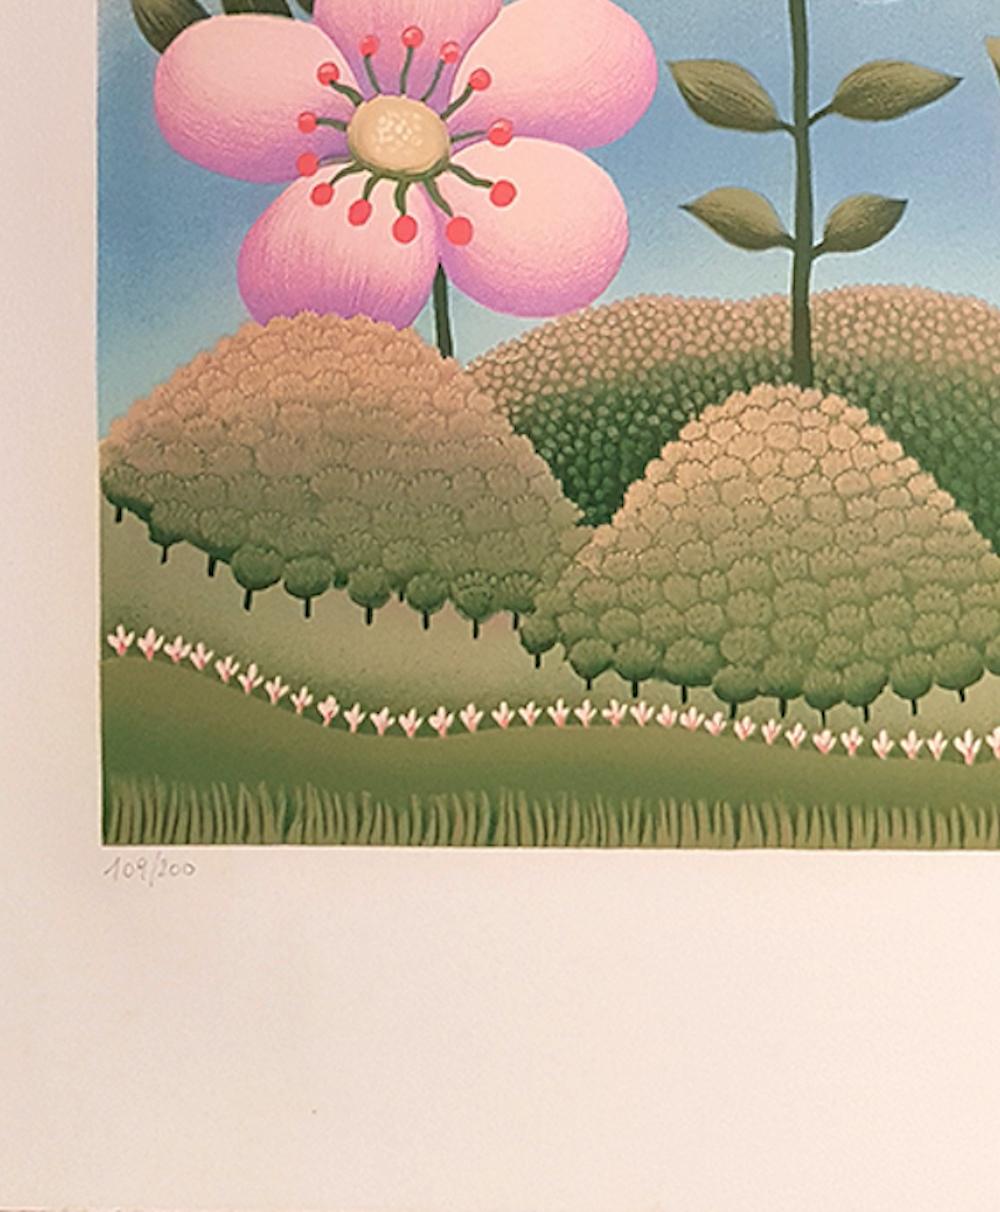 Flower in the Landscape - Screen Print by I. Rabuzin - 1980 - Beige Figurative Print by Ivan Rabuzin